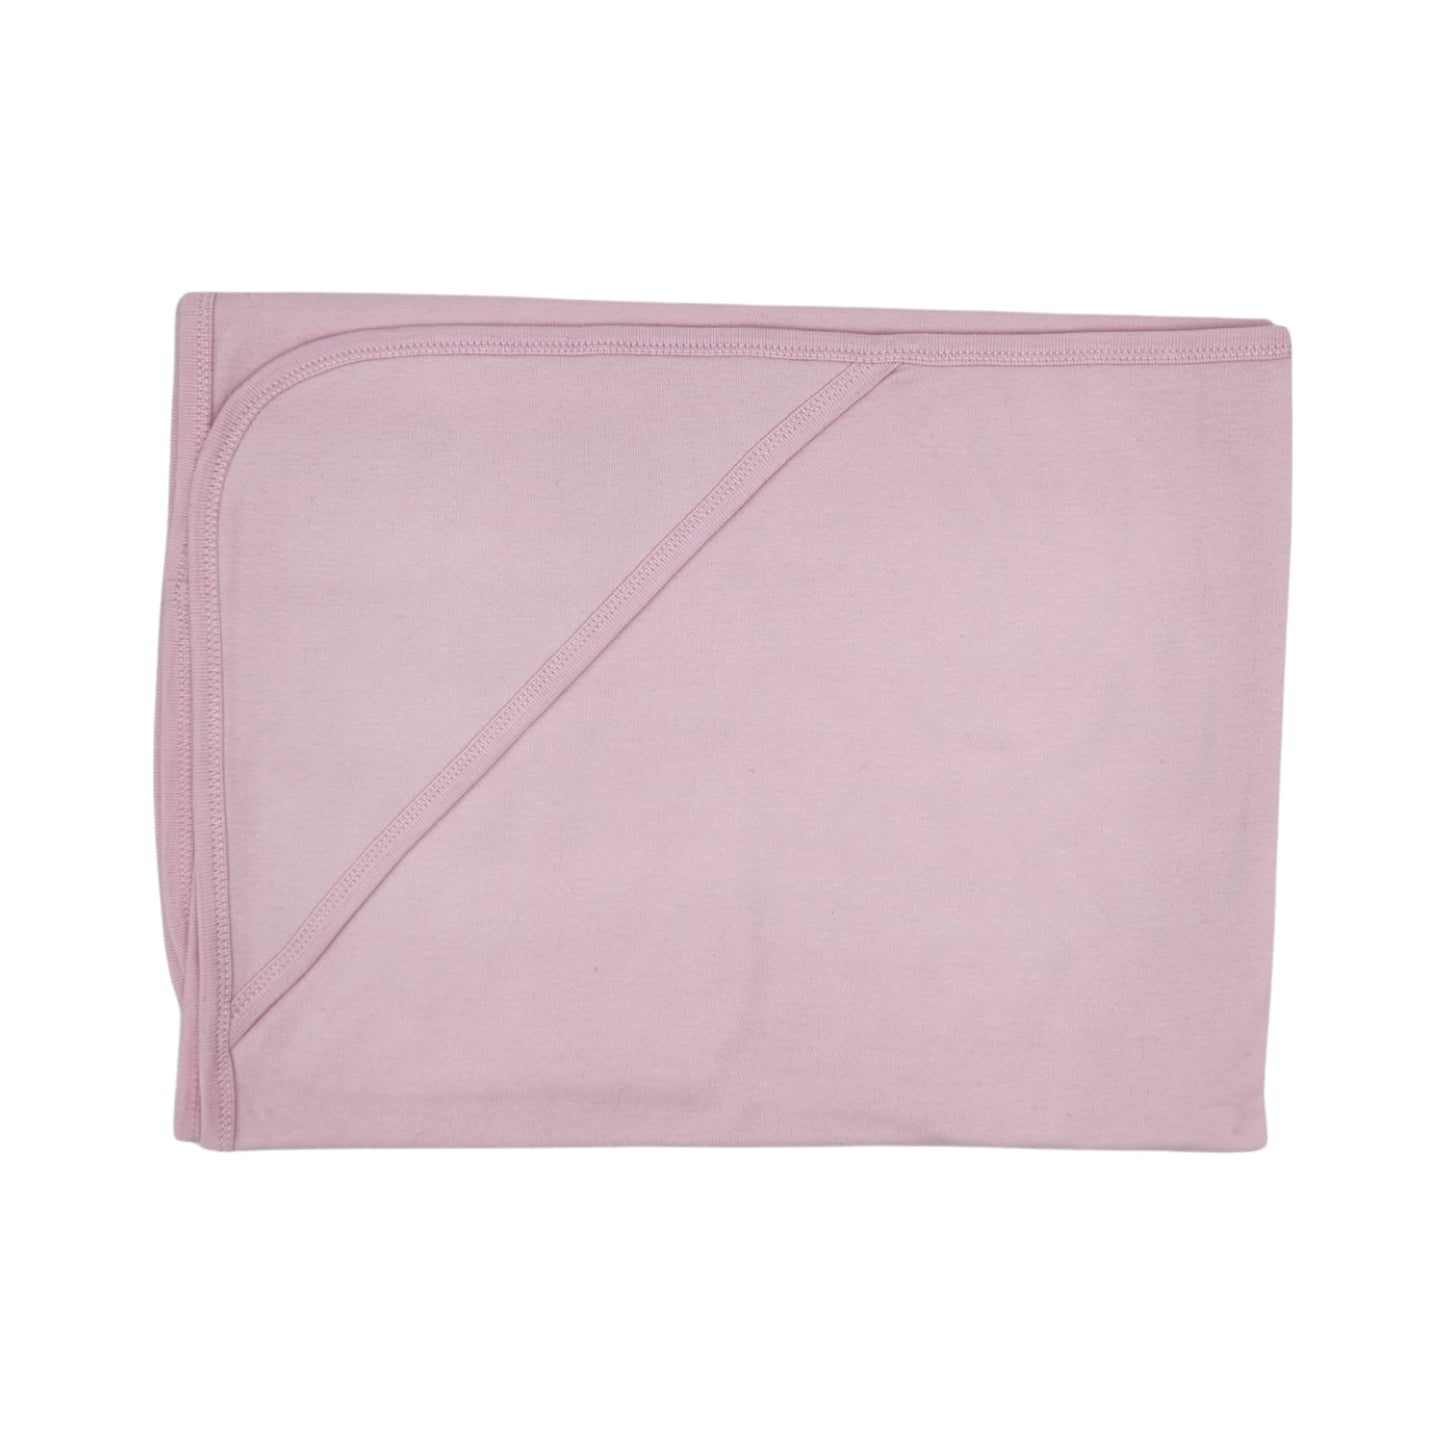 Pink Hooded Blanket 